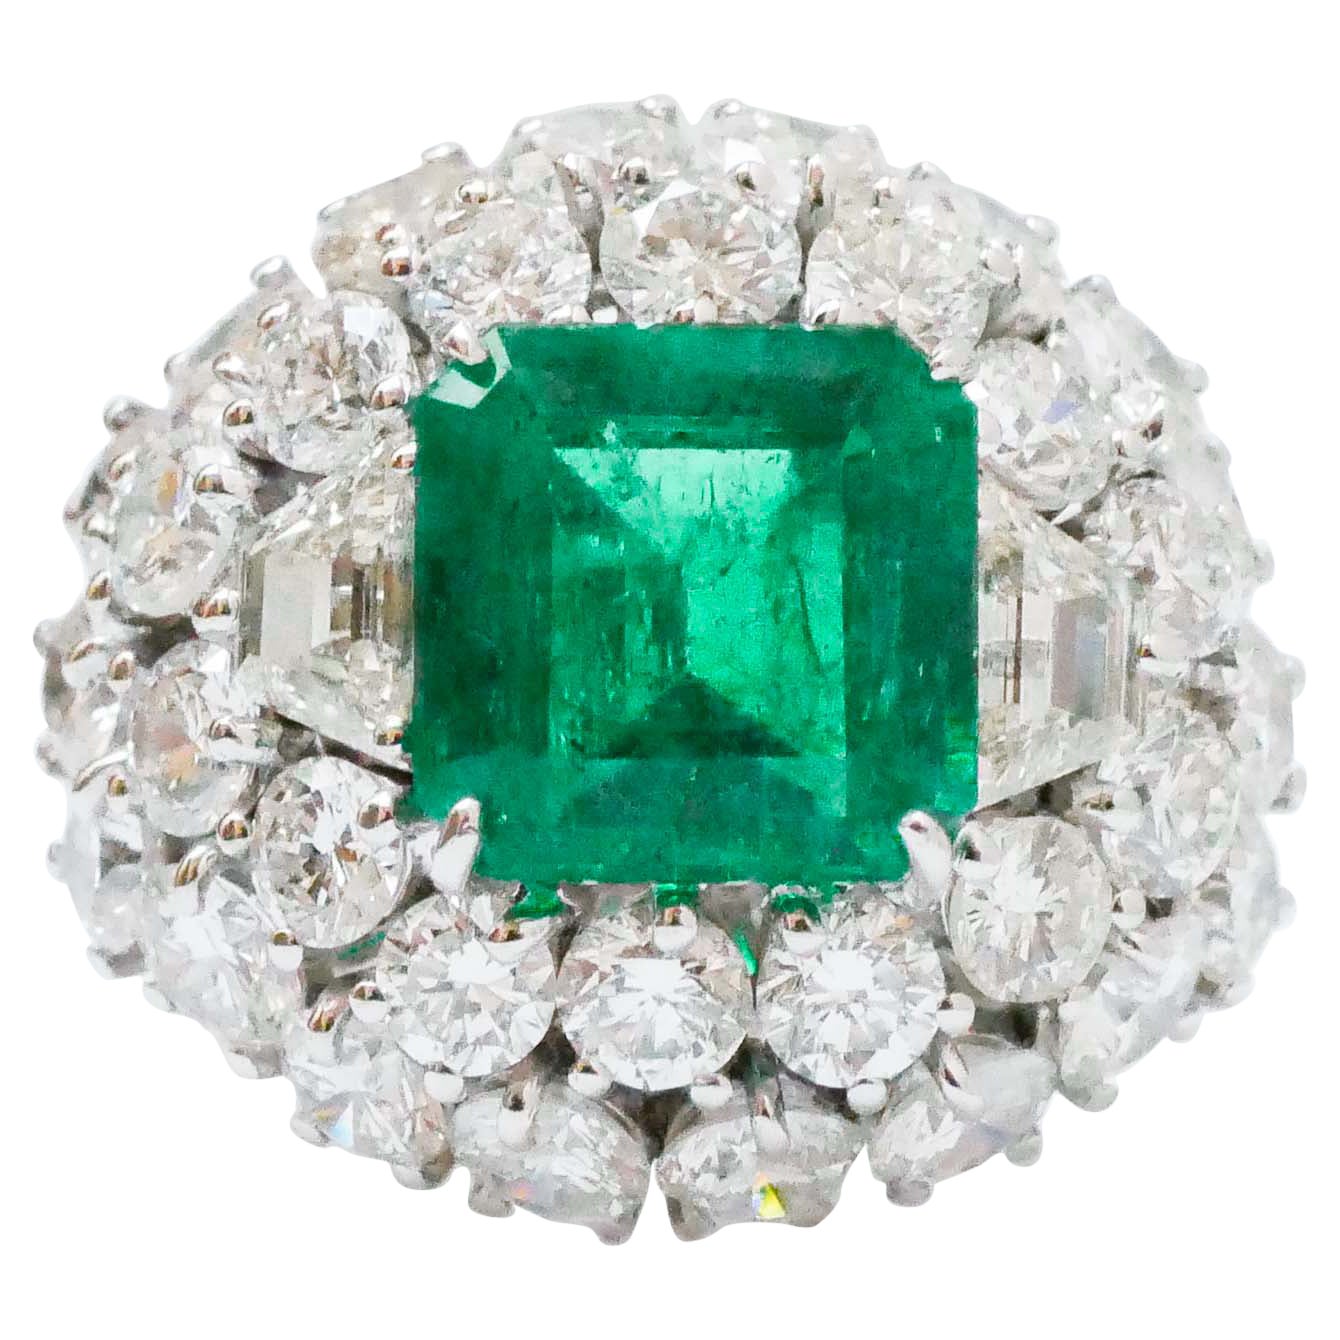 3.39 Carat Emerald, Diamonds, 18 Karat White Gold Ring.